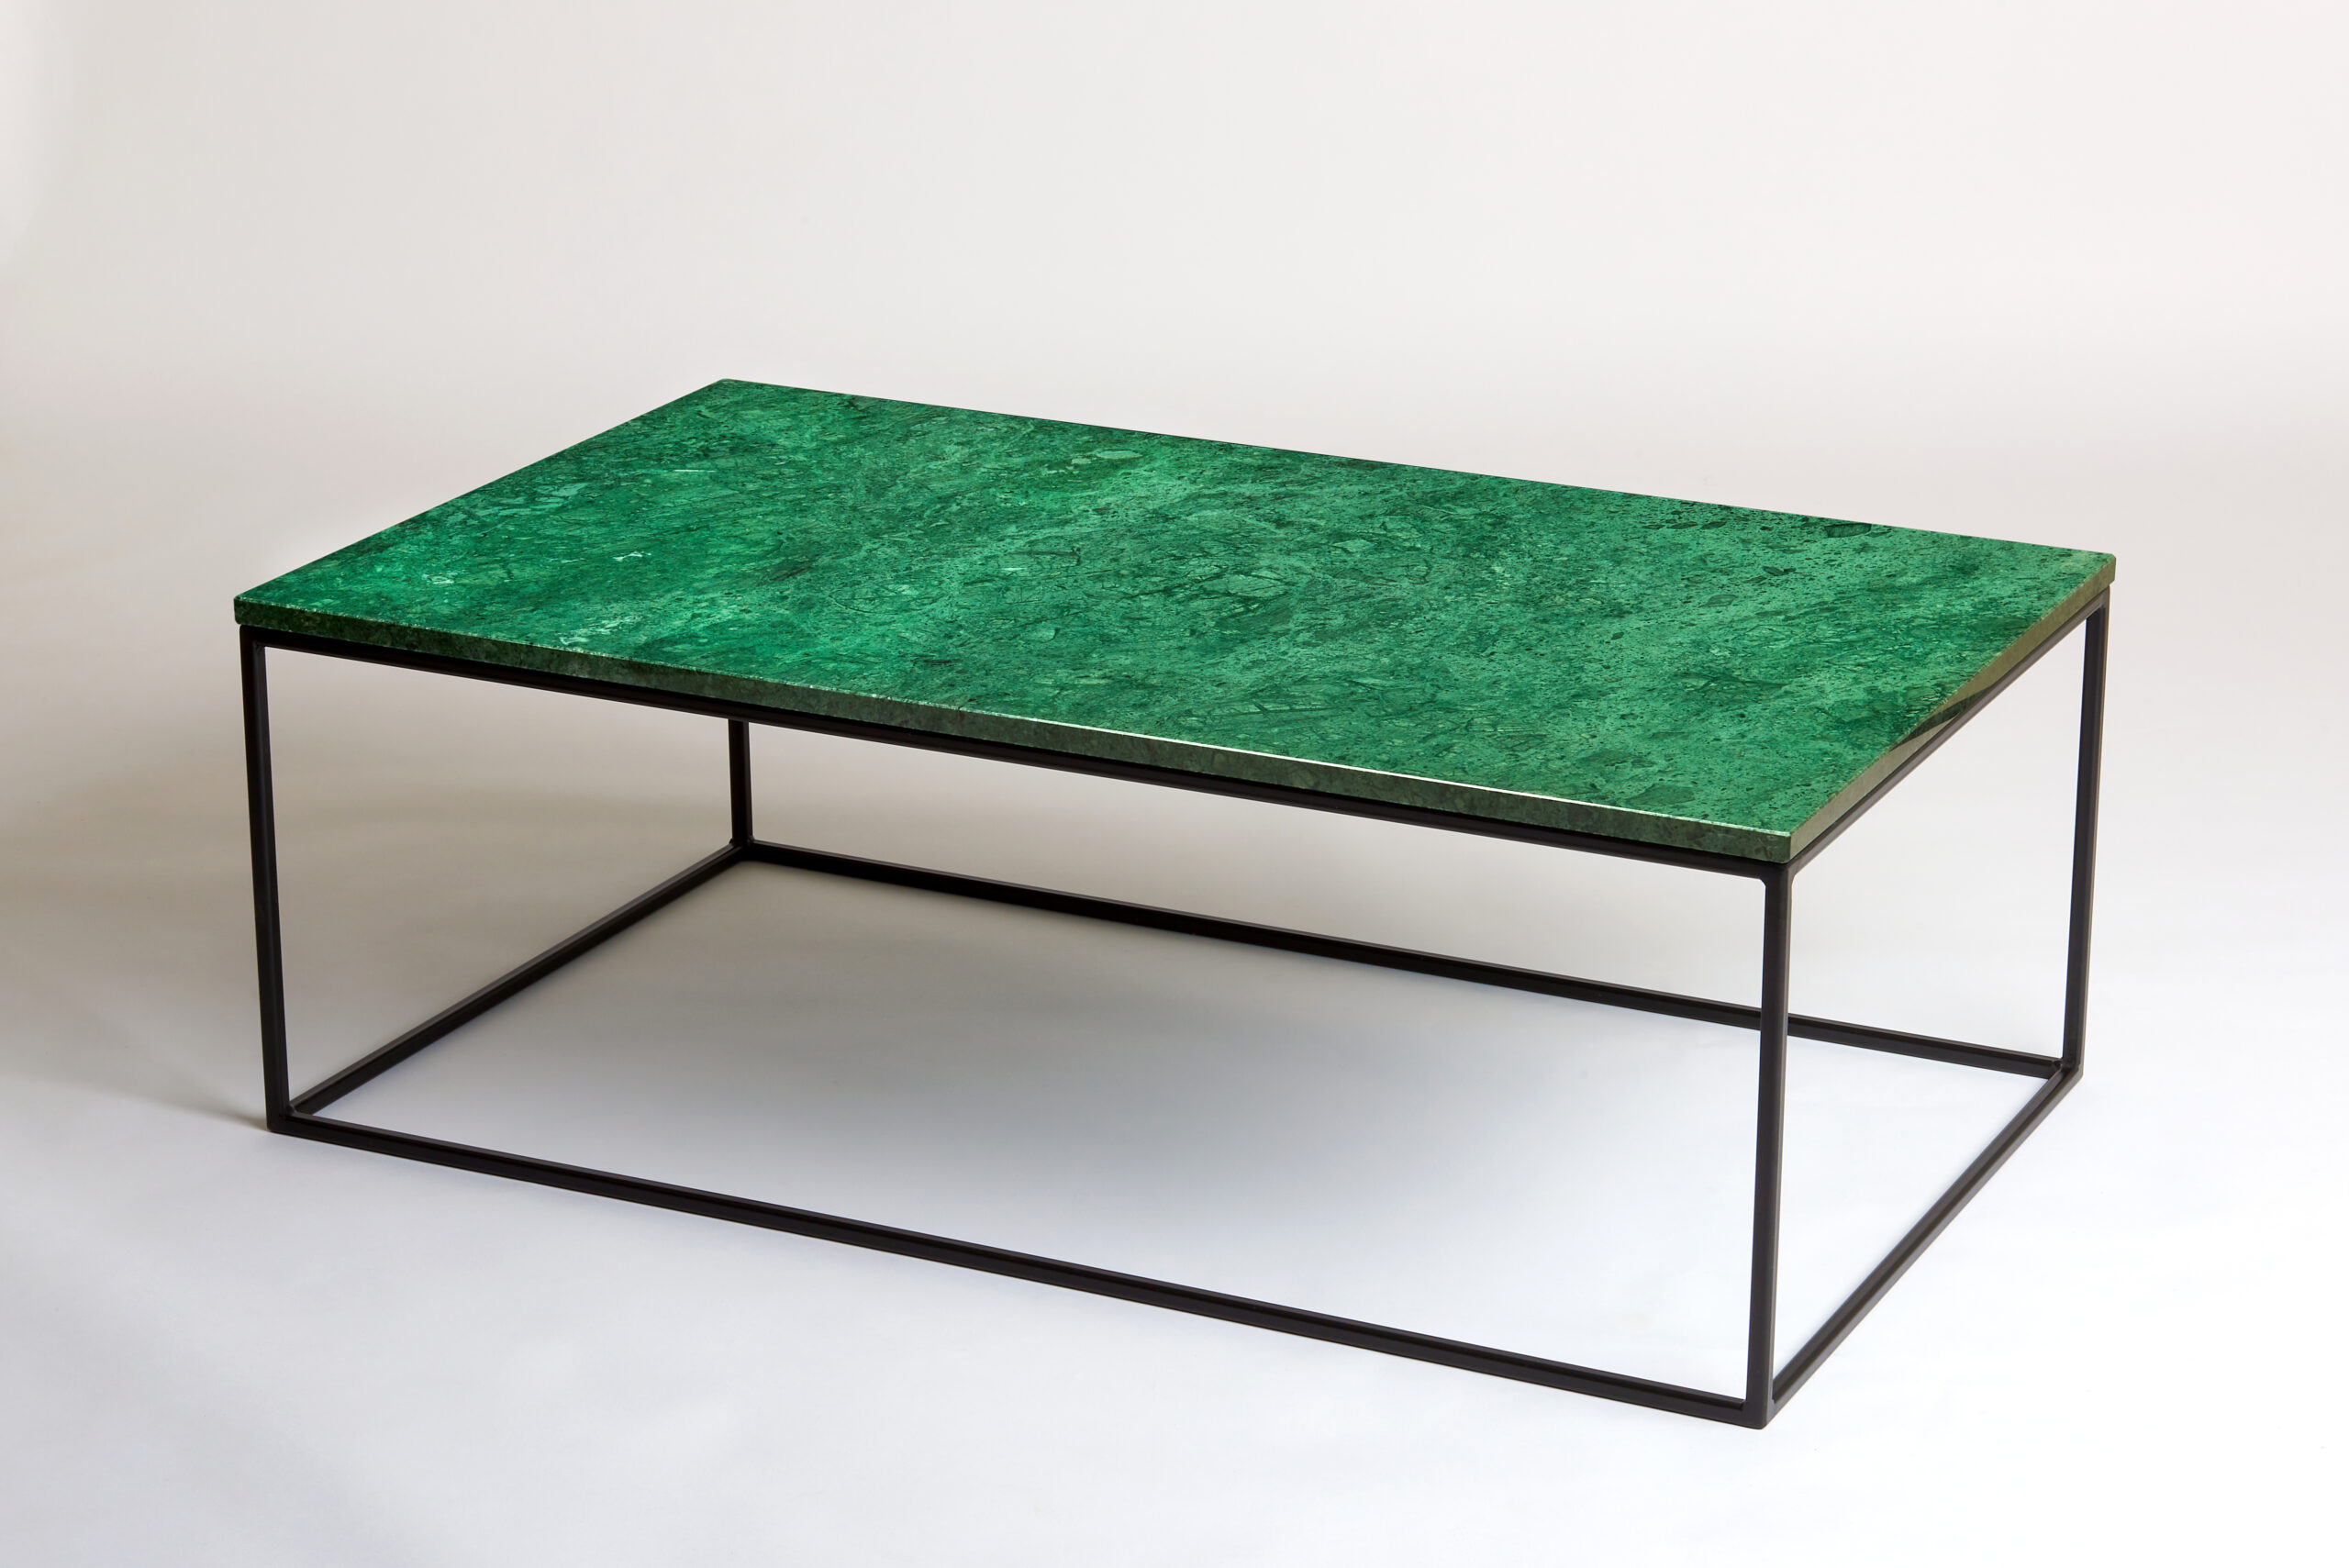 120 bij 70 cm - Groene marmeren salontafel - boven zijaanzicht- VanMarmer